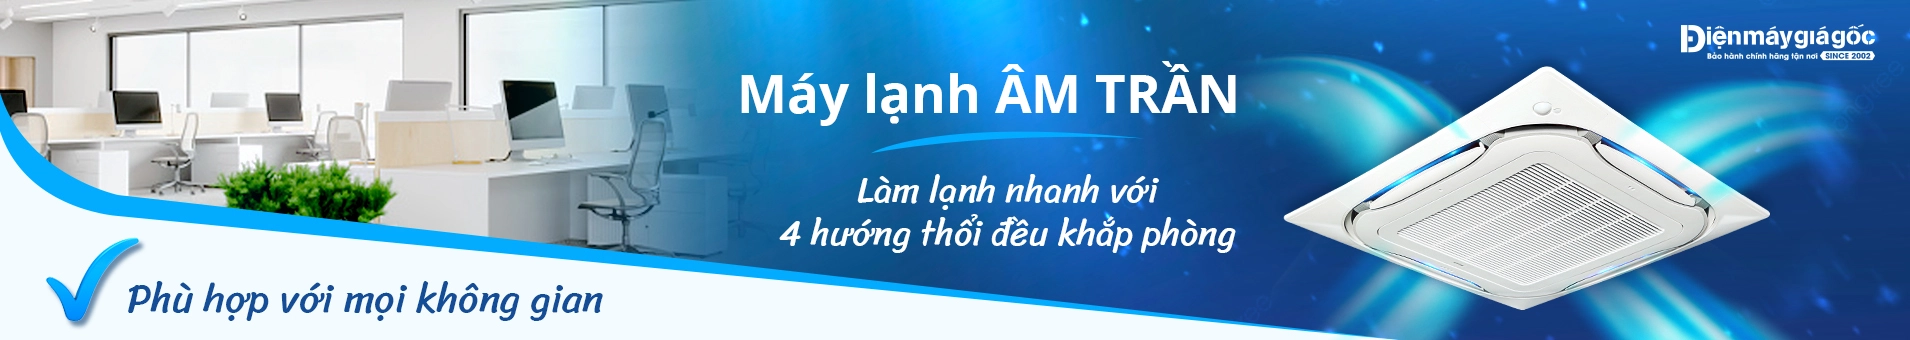 may_lanh_am-tran_gia_goc.webp